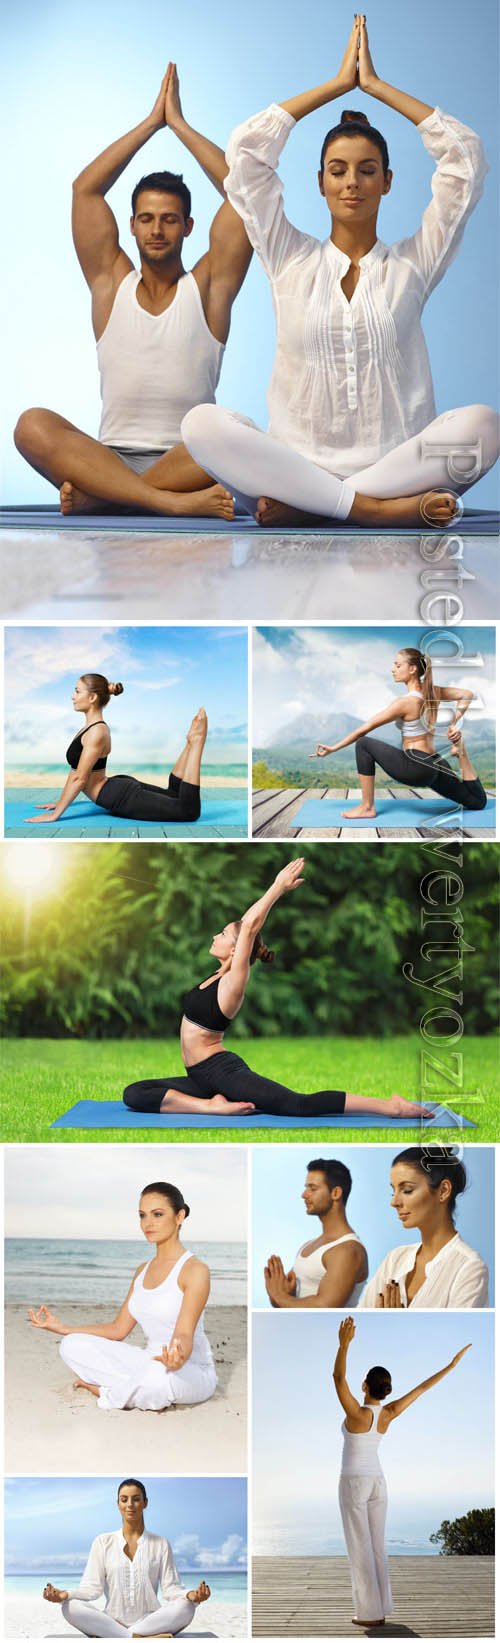 People doing yoga stock photo